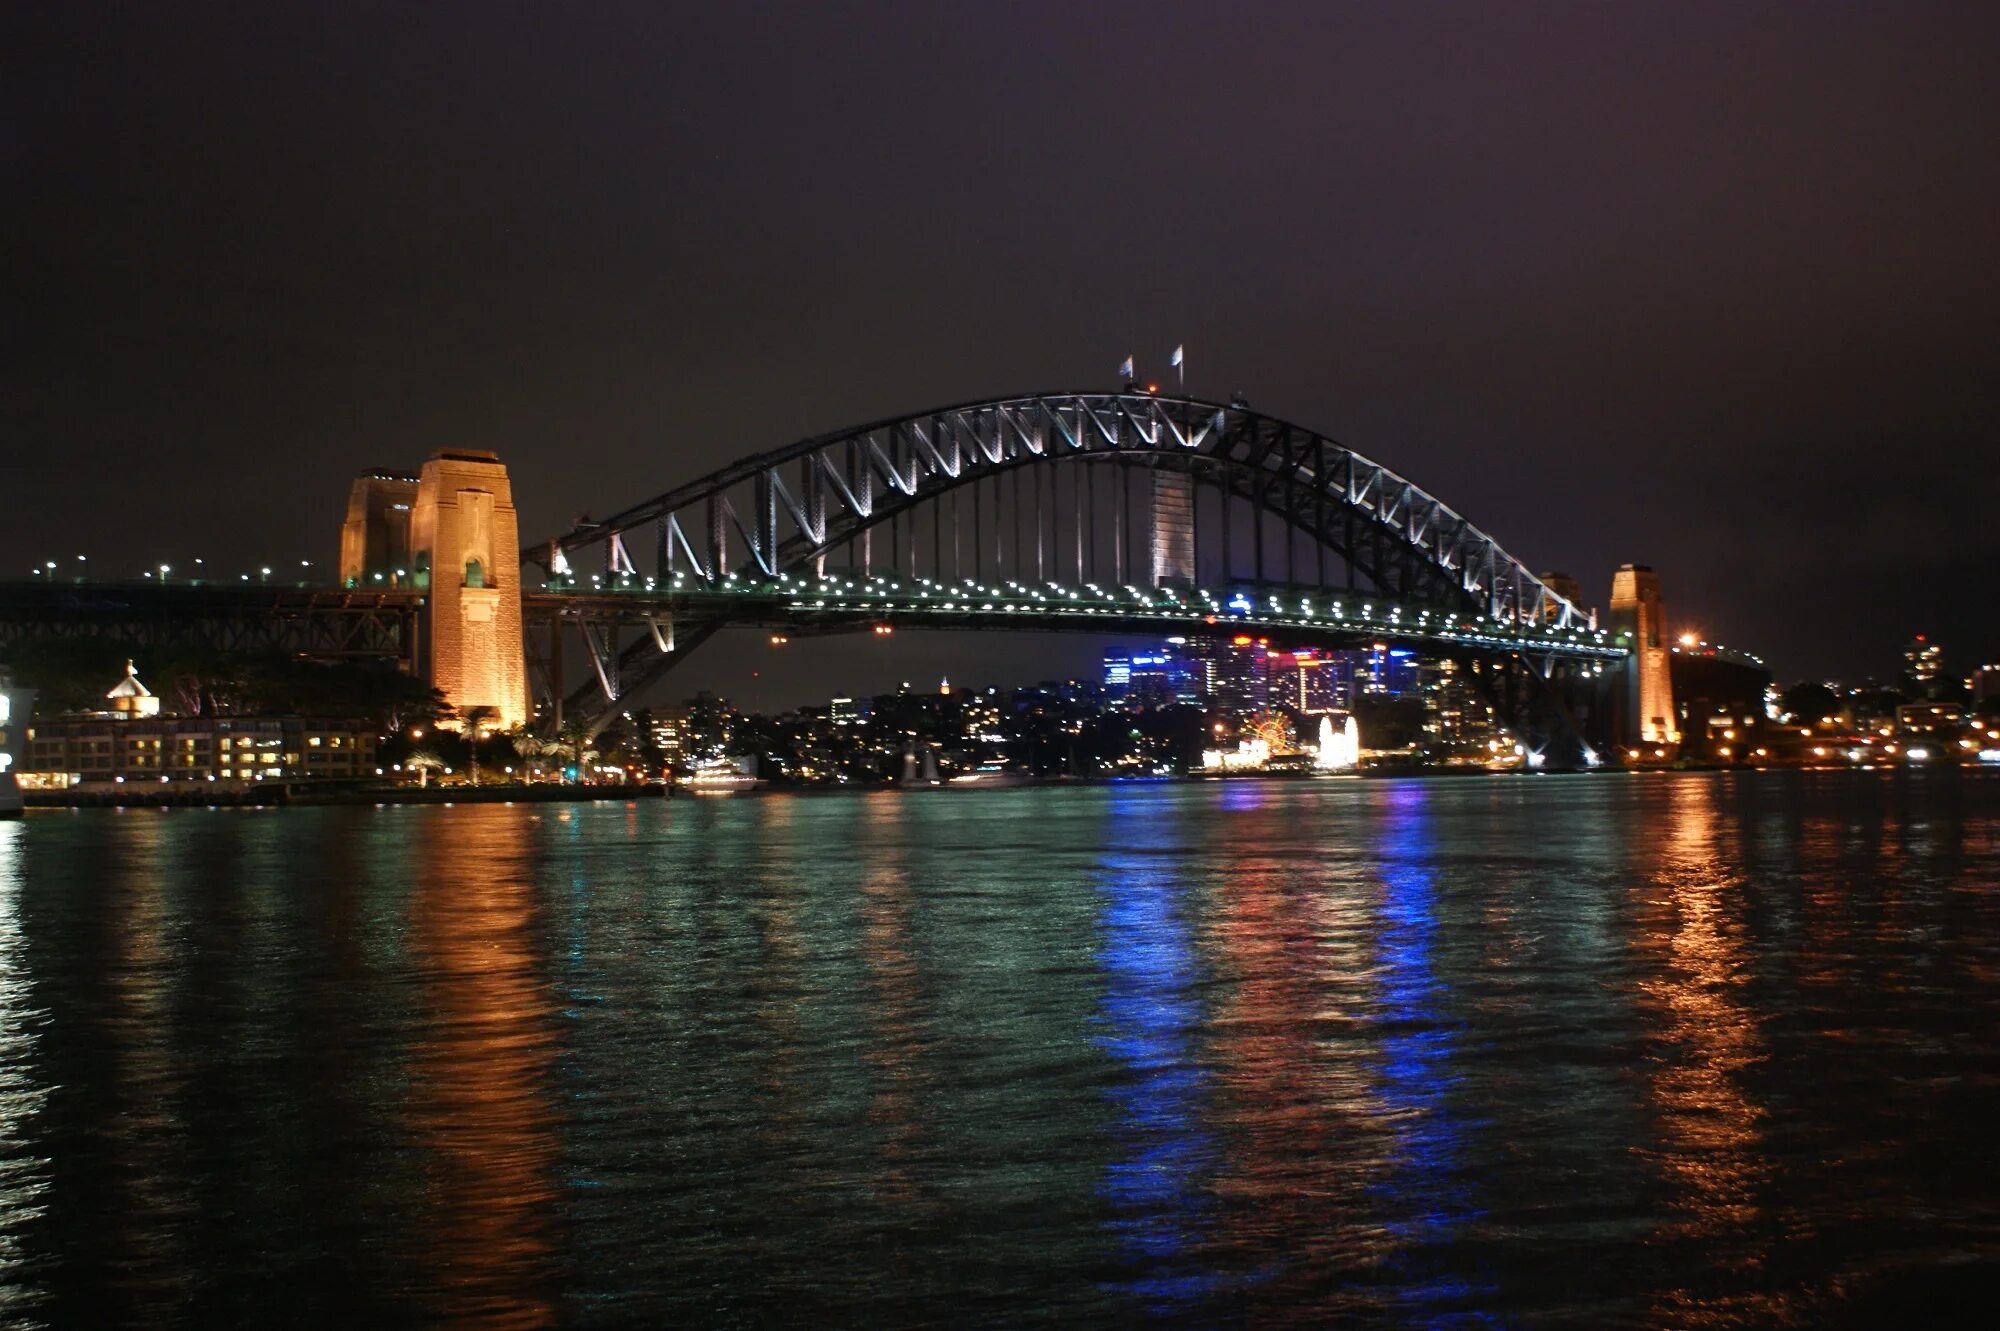 Harbour bridge. Сиднейский Харбор-бридж. Сиднейский мост Харбор-бридж. Харбор-бридж (Сидней, Австралия). Мост Харбор бридж в Австралии.